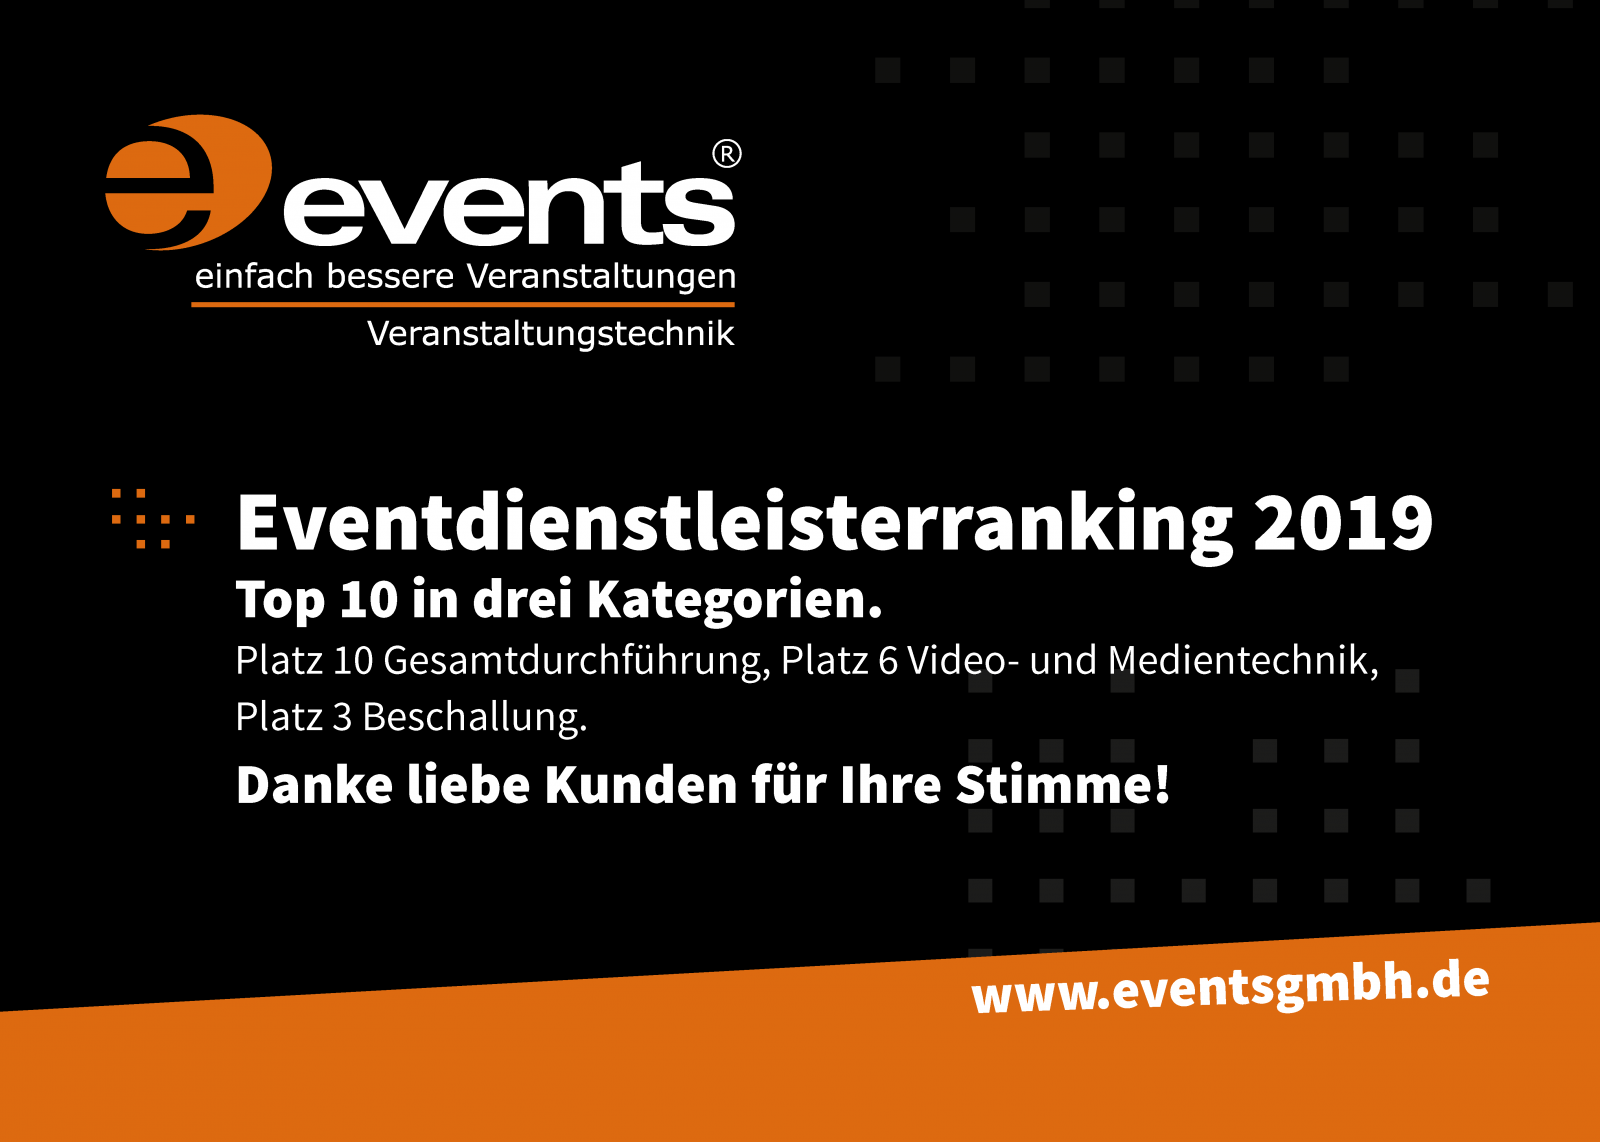 Hindweisbild_events_Top10_Eventdienstleisterranking